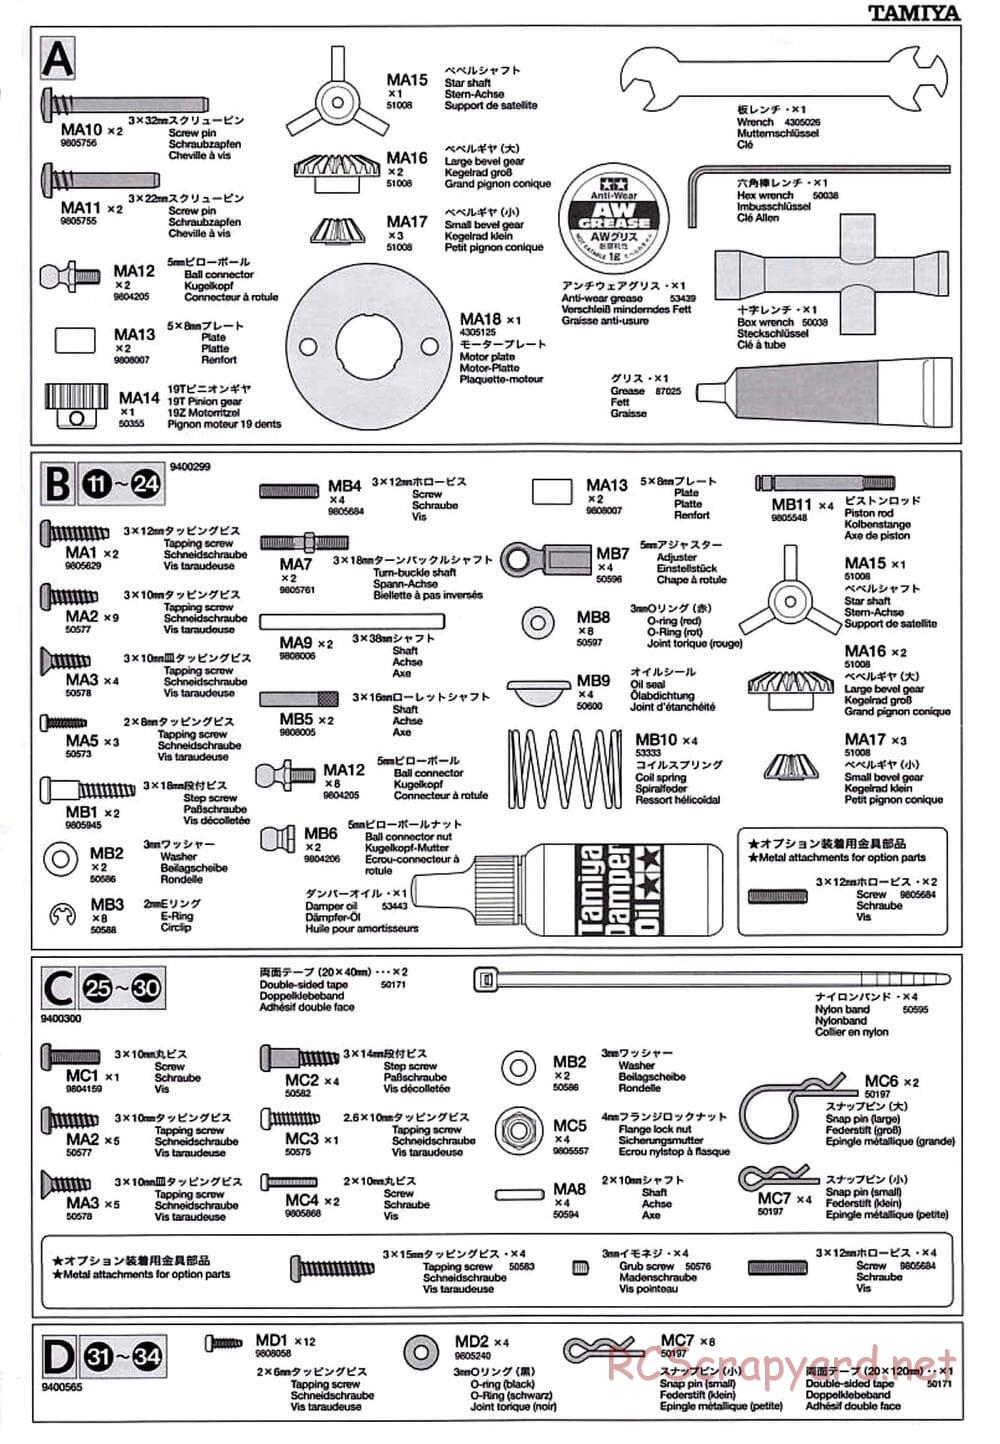 Tamiya - TT-01D Chassis - Manual - Page 23